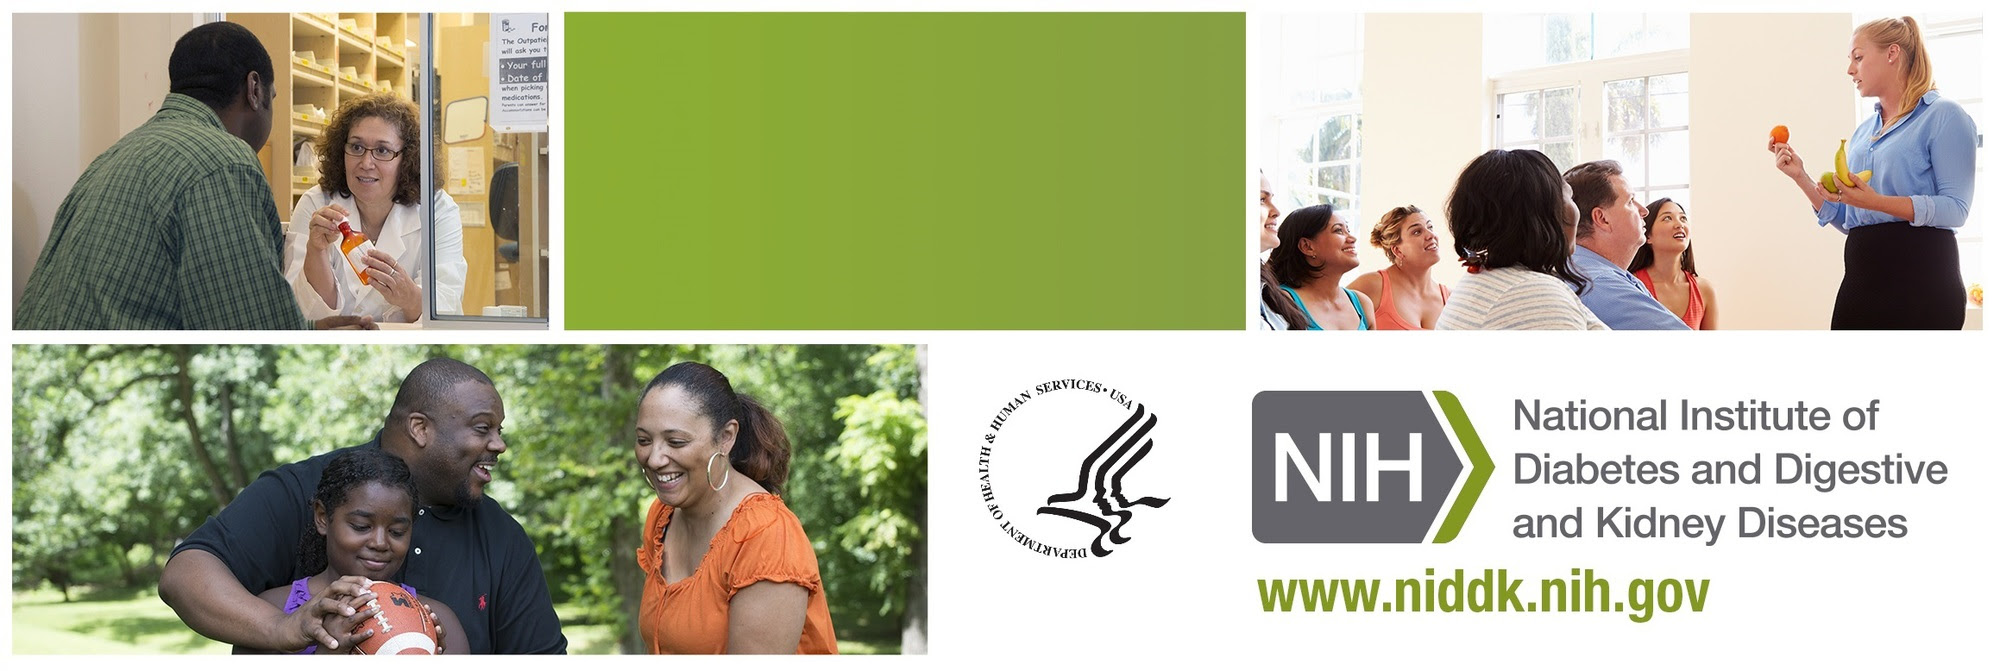 NIDDK Health Information News - May 2016